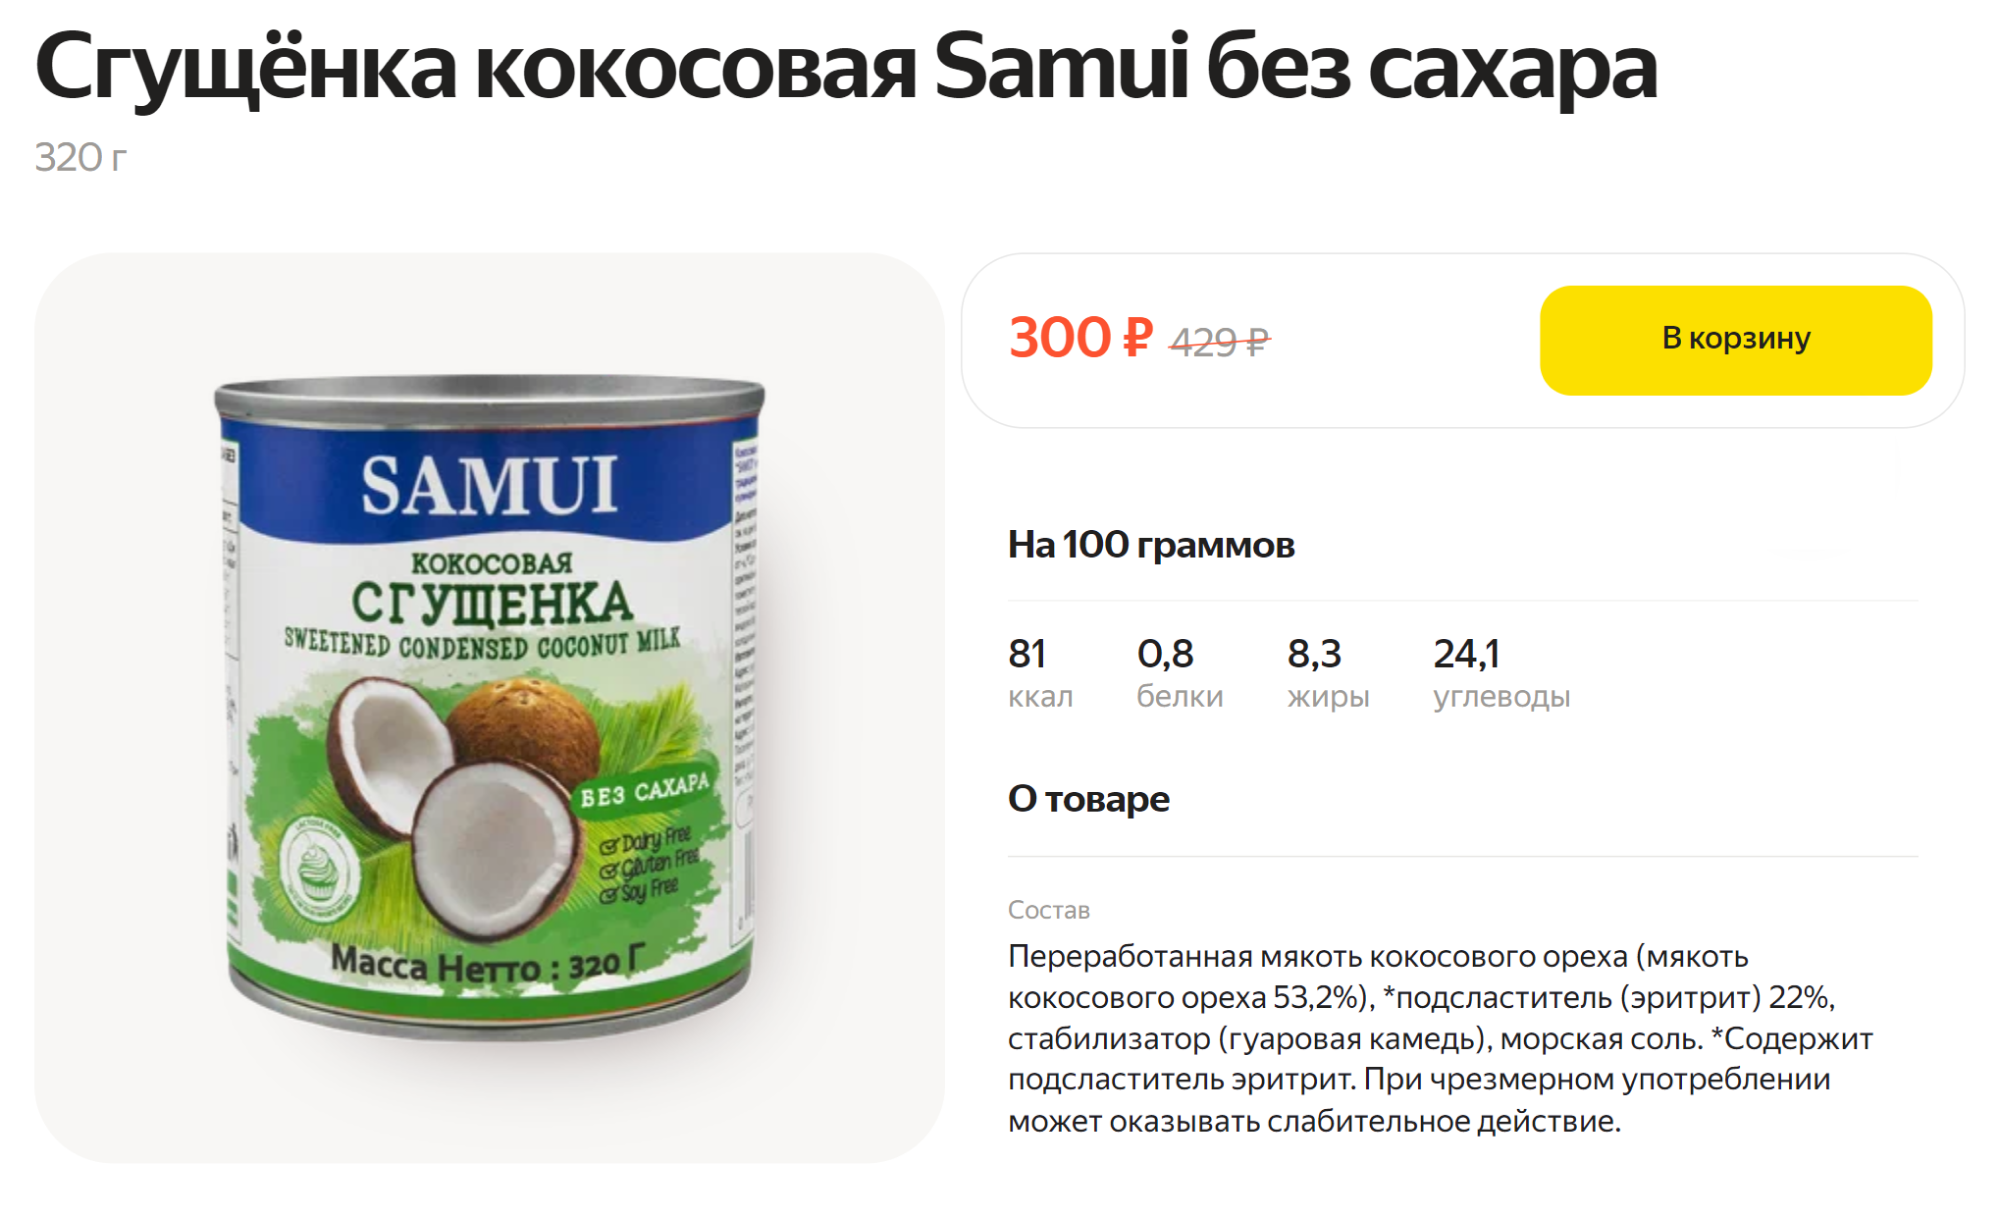 Эта сгущенка содержит подсластитель эритрит — он может работать как слабительное, если съесть его слишком много. Источник: lavka.yandex.ru